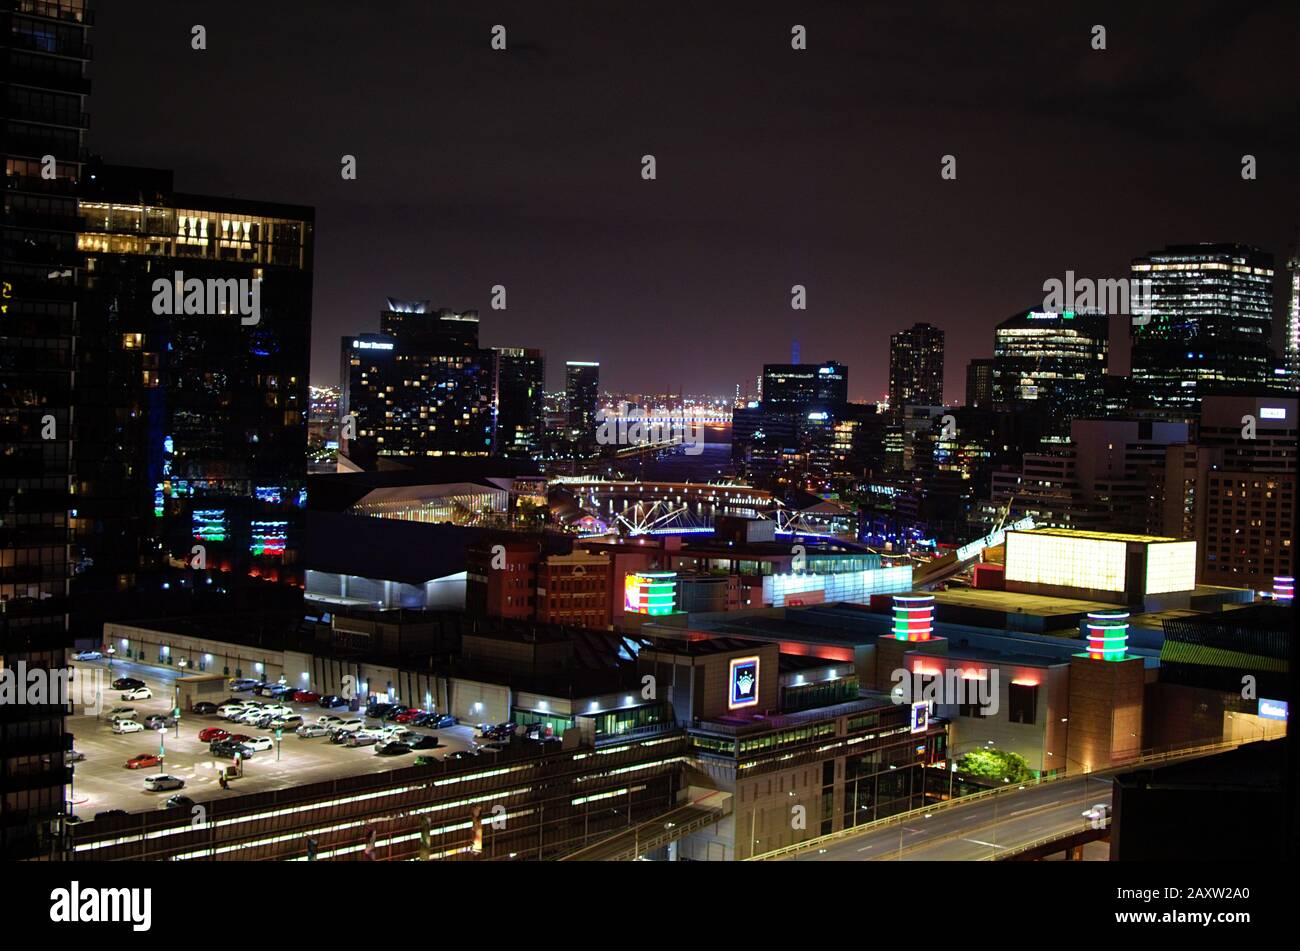 Vue de nuit sur le Crown Casino Southbank et les bâtiments d'affaires du quartier des affaires de Melbourne Banque D'Images